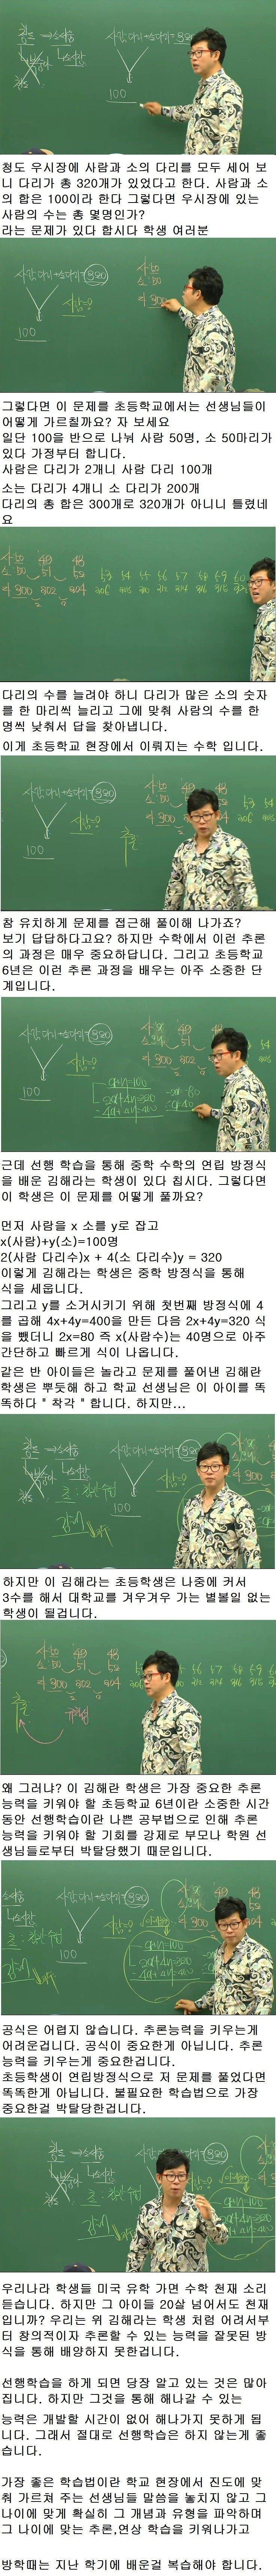 대한민국 수학교육 문제점.png.jpg